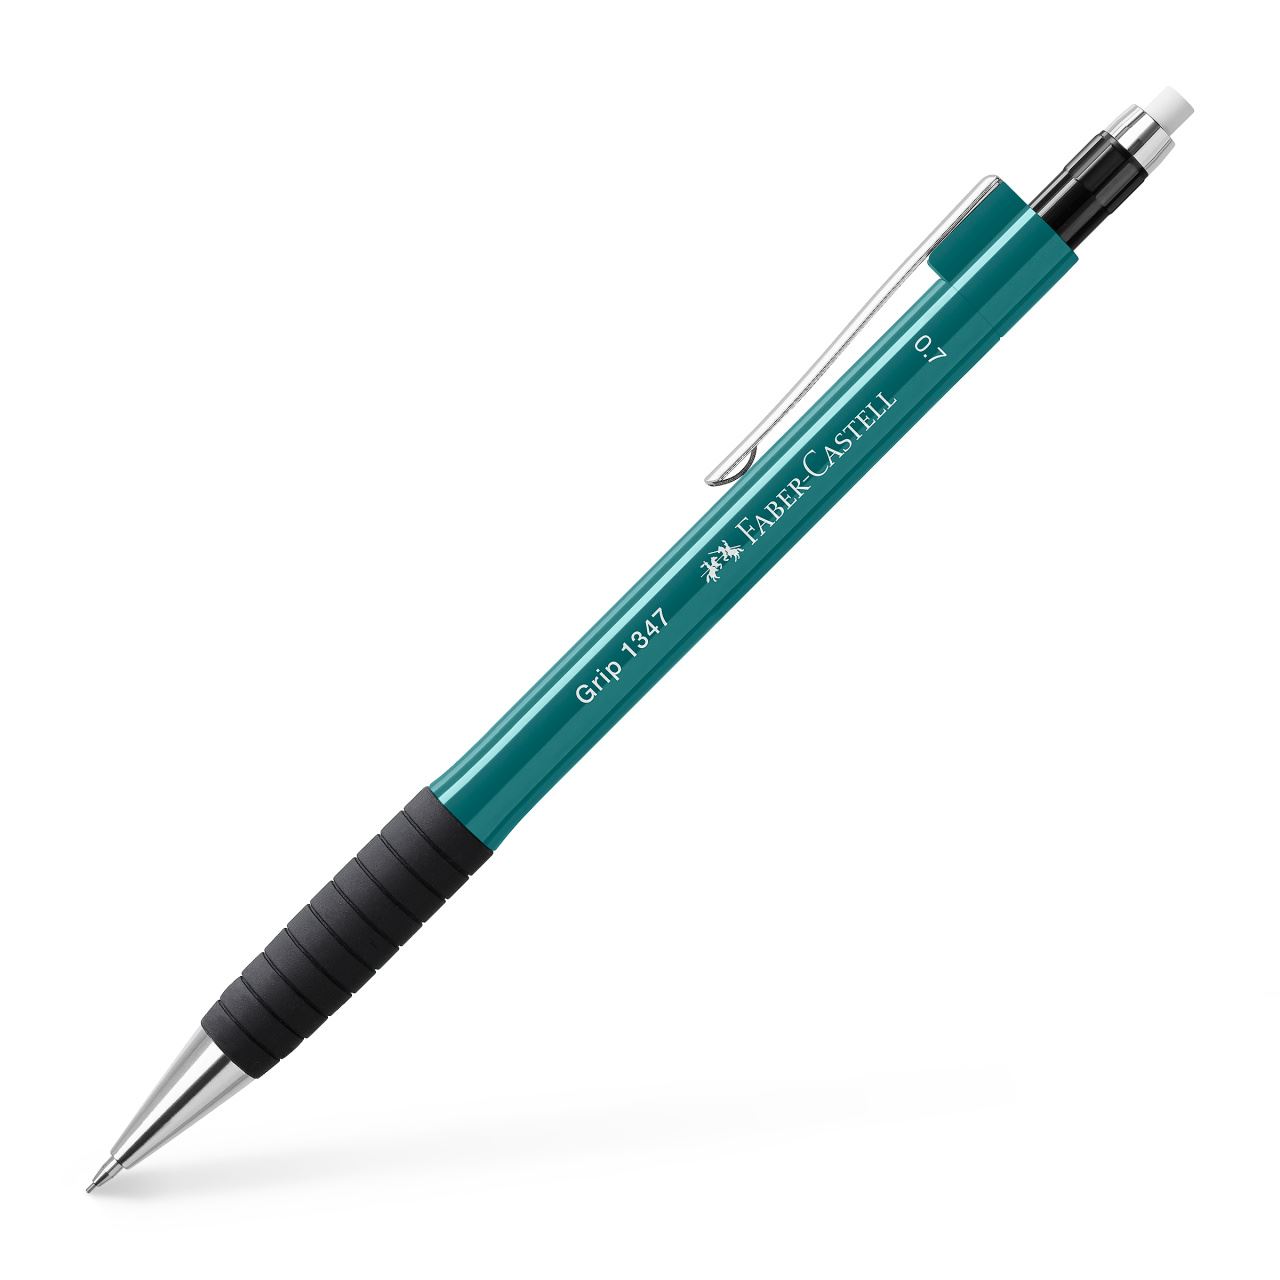 Faber-Castell - Mechanical pencil Grip 1347 0.7mm emerald green